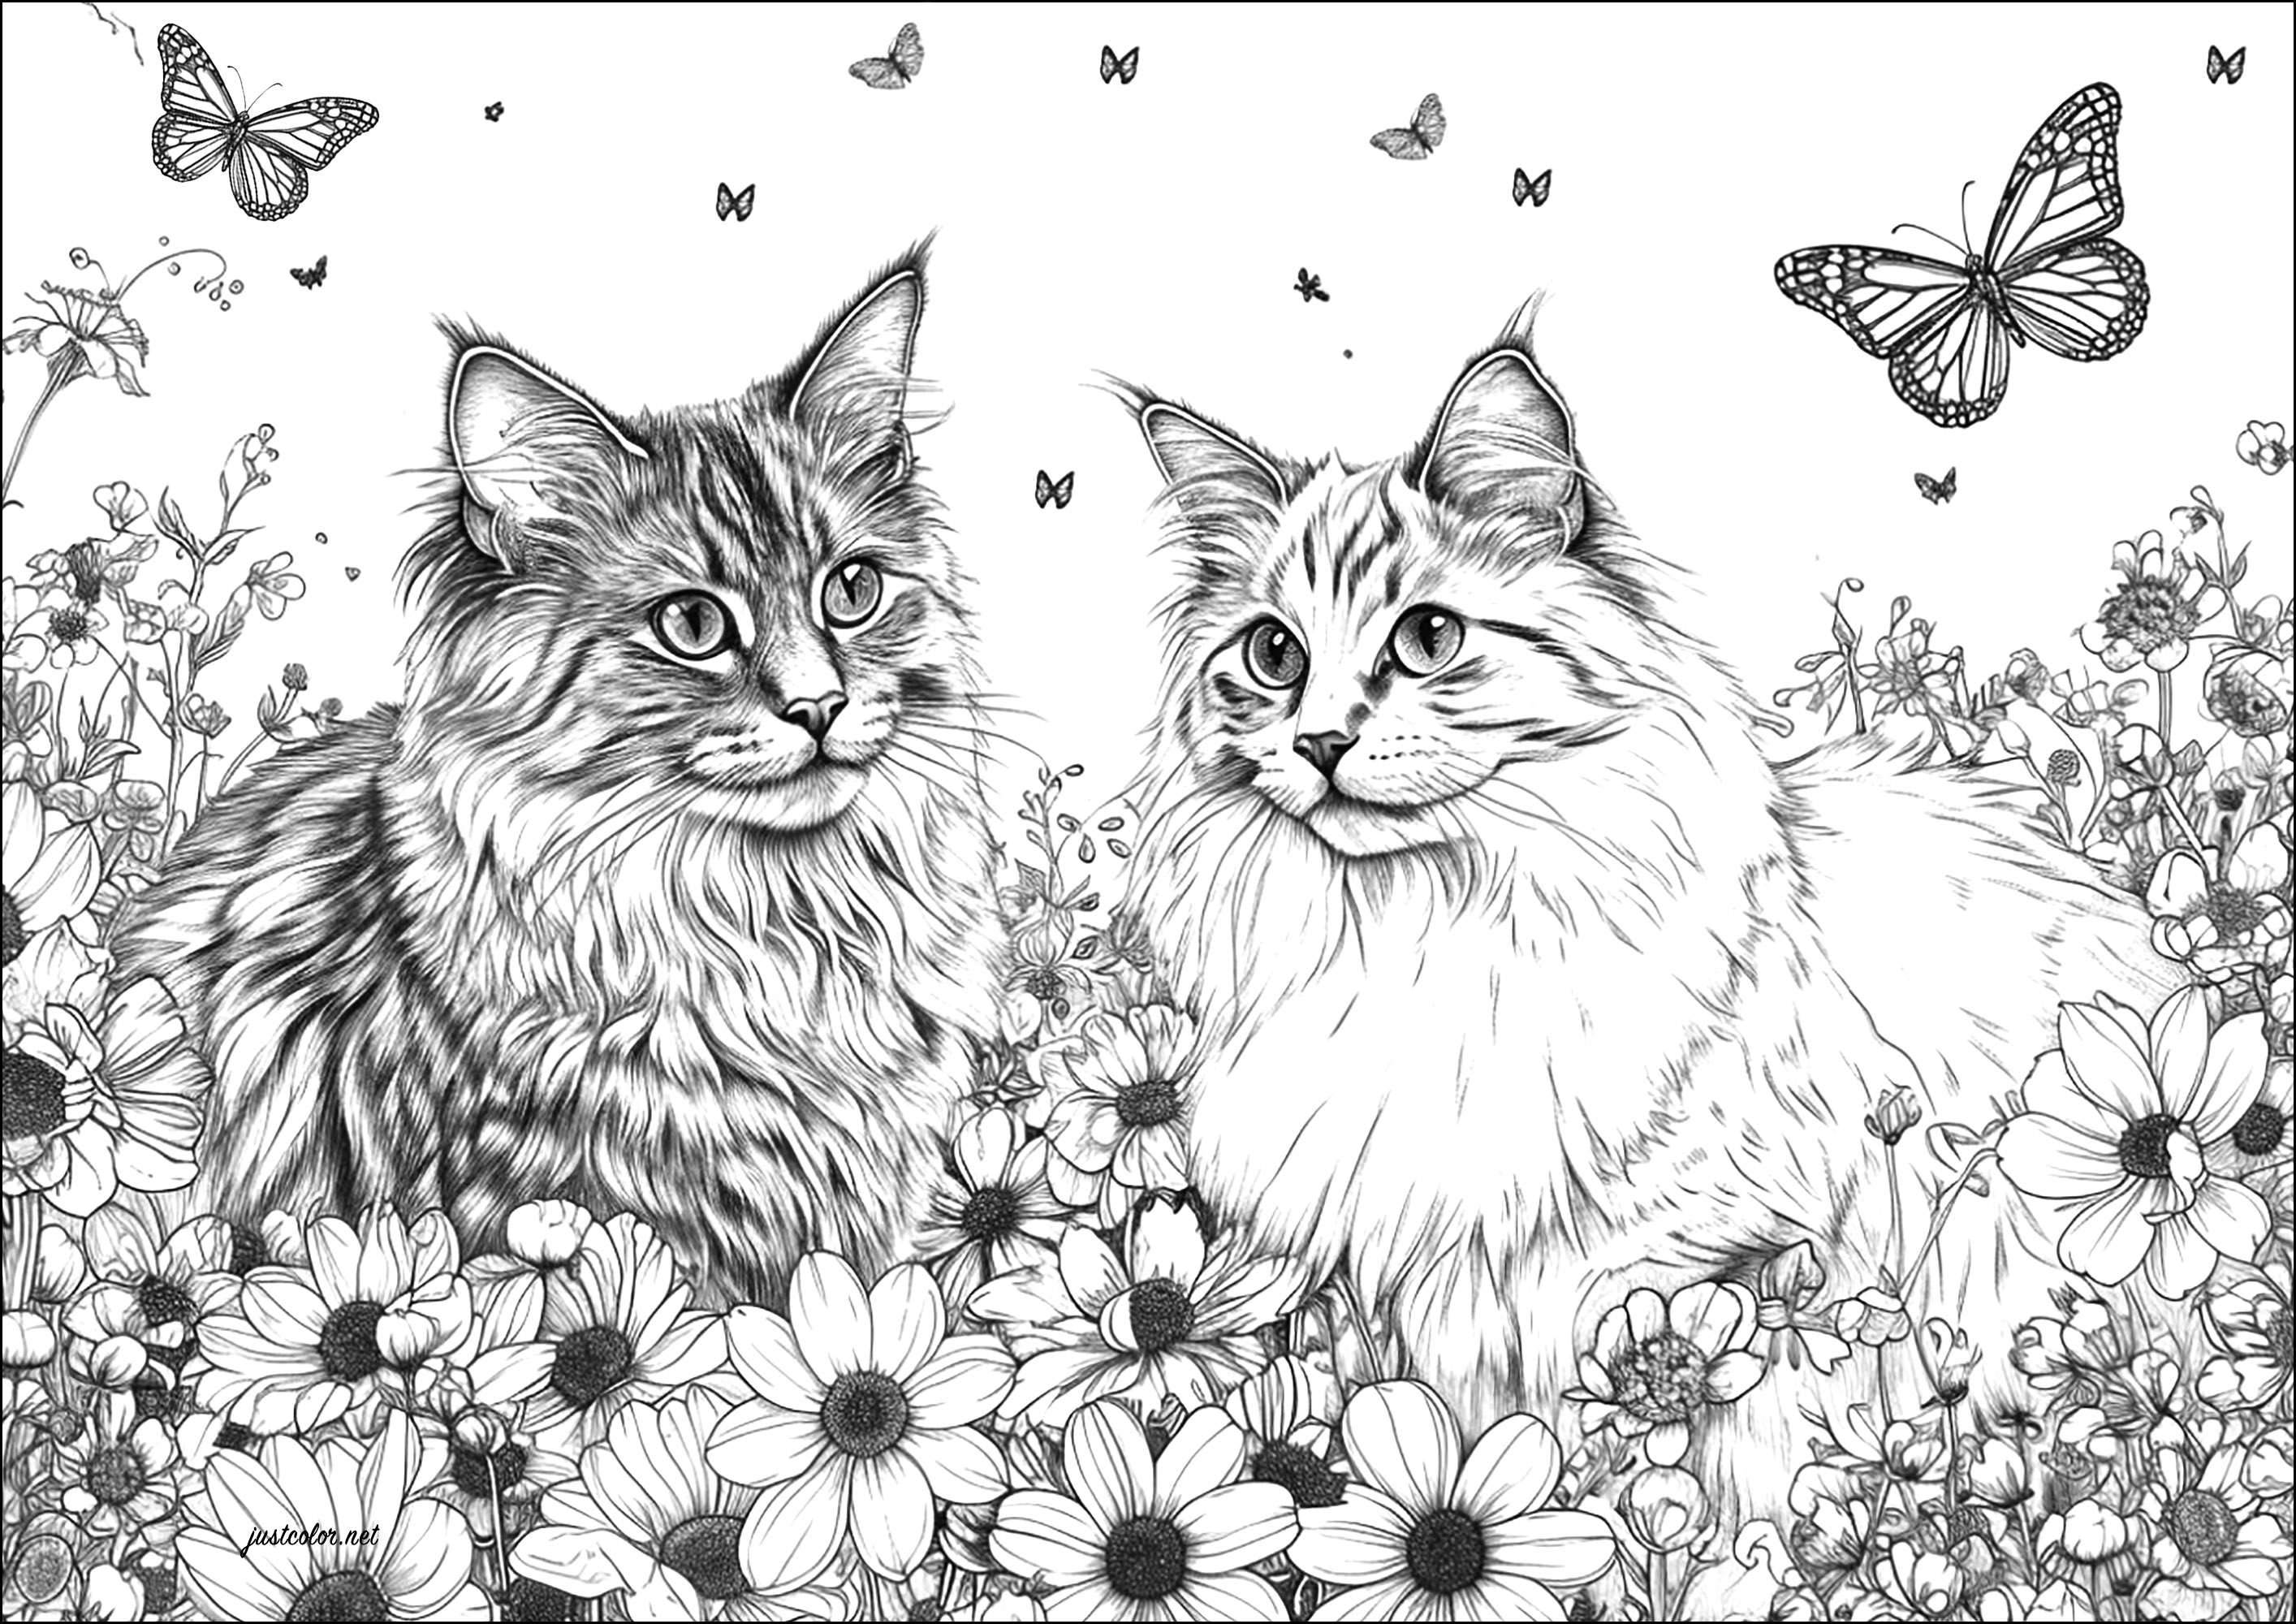 Dos gatos muy realistas con flores y mariposas. Un dibujo muy realista, que requerirá horas de trabajo.